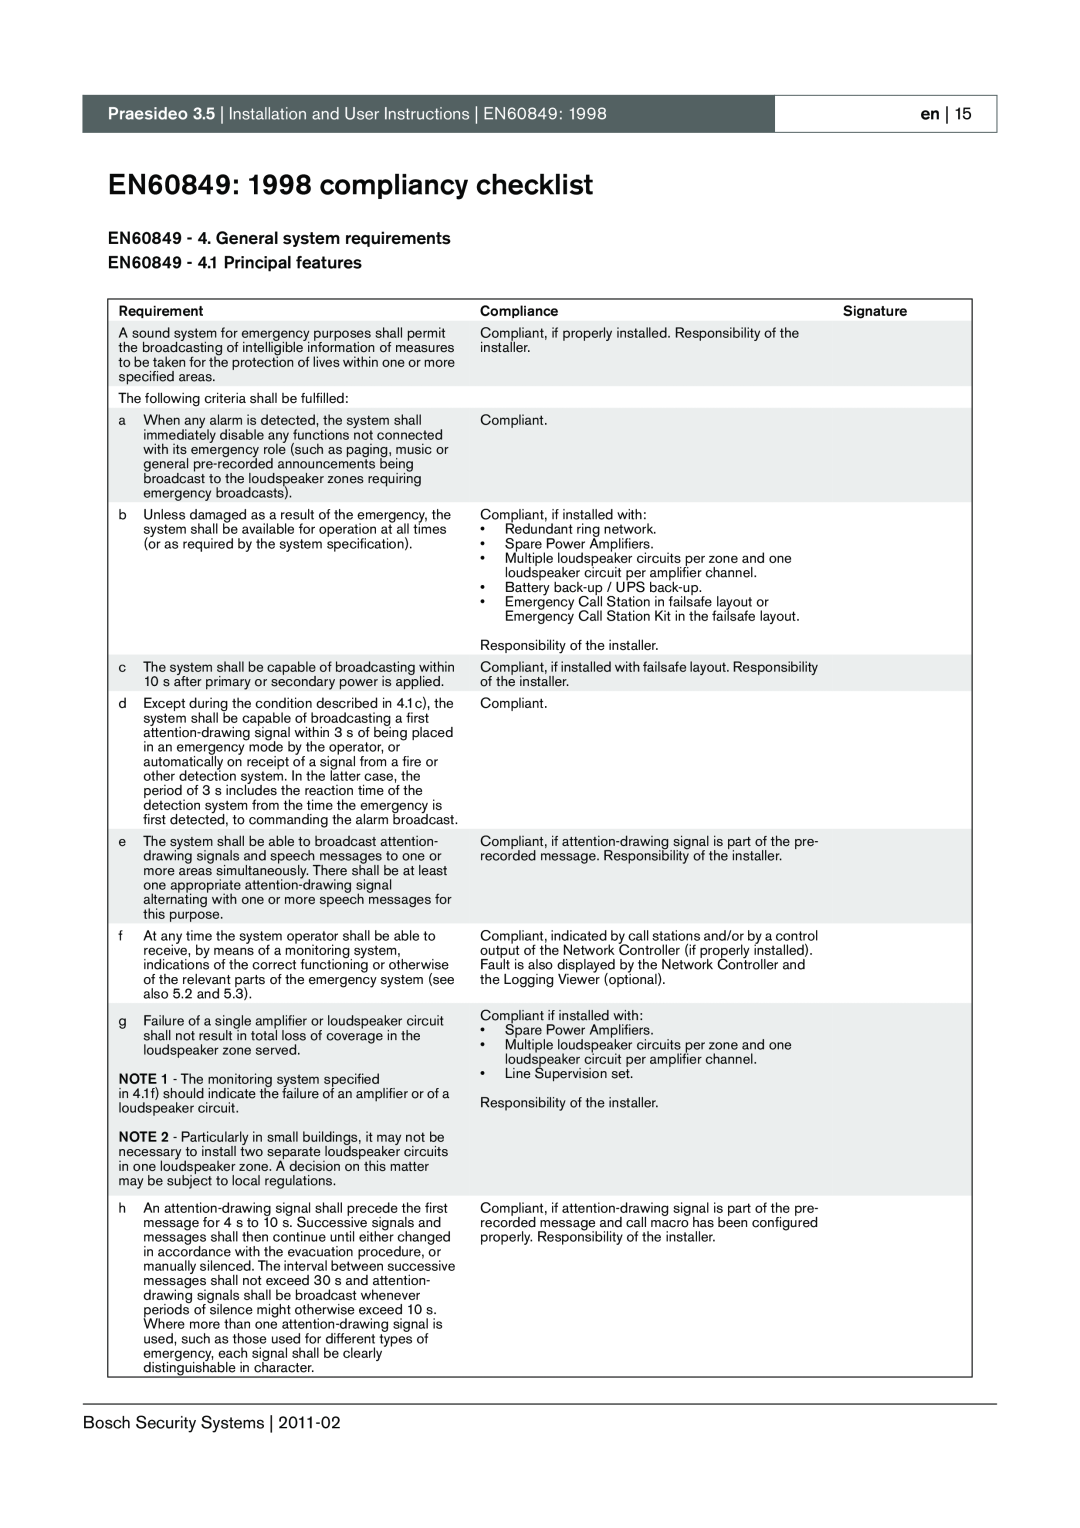 Bosch Appliances 3.5 manual EN60849: 1998 compliancy checklist, EN60849 - 4. General system requirements 